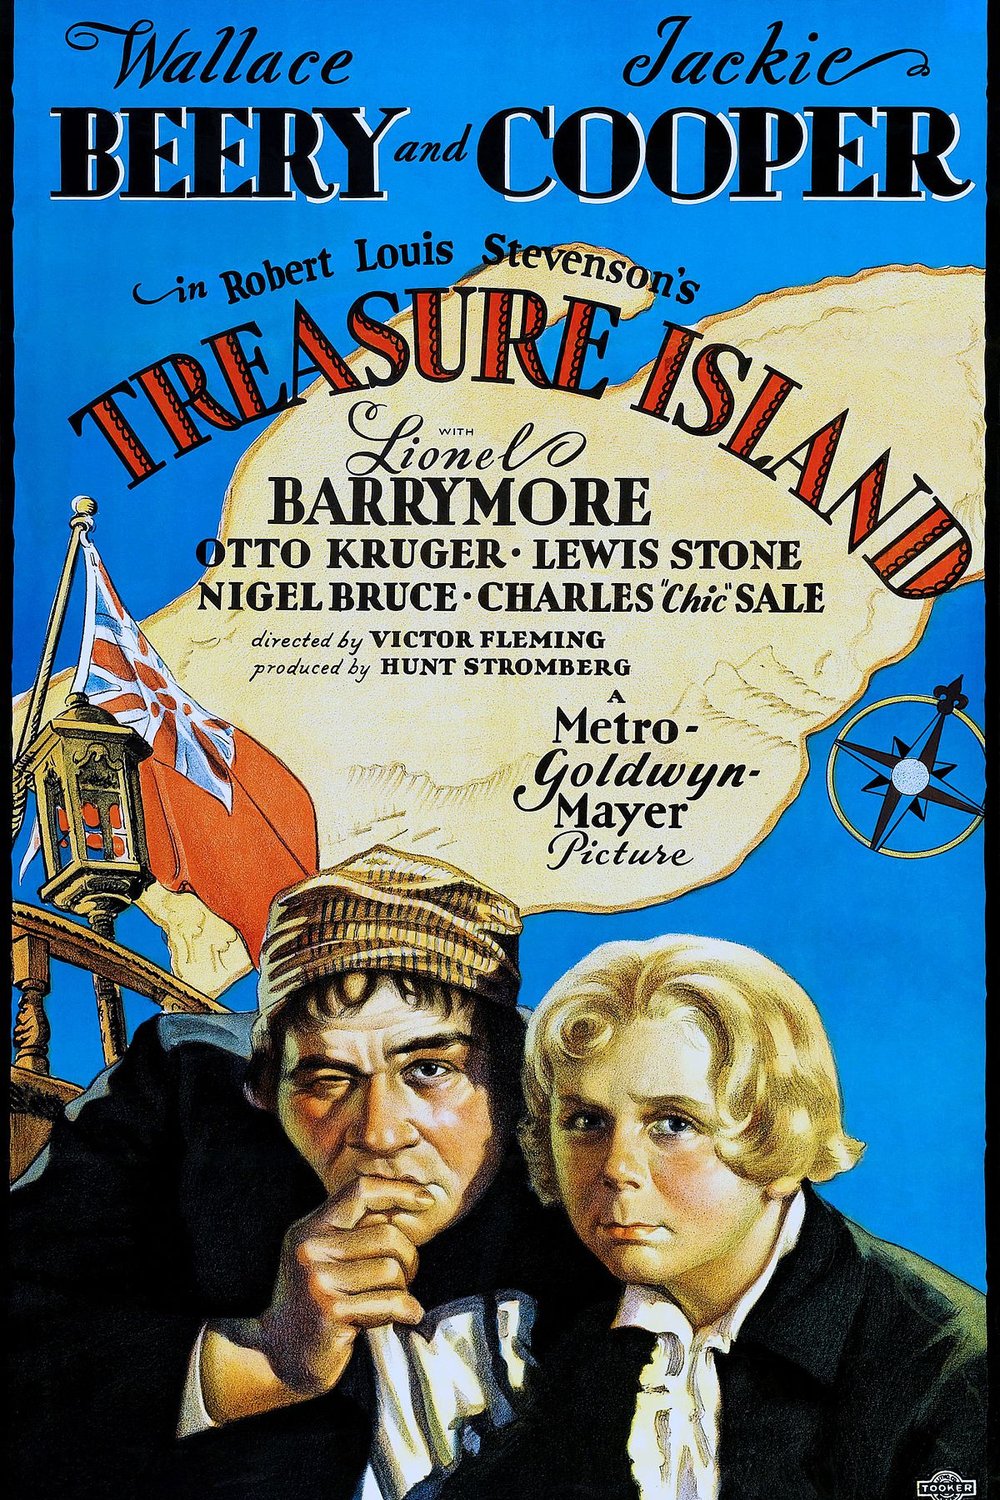 L'affiche du film Treasure Island